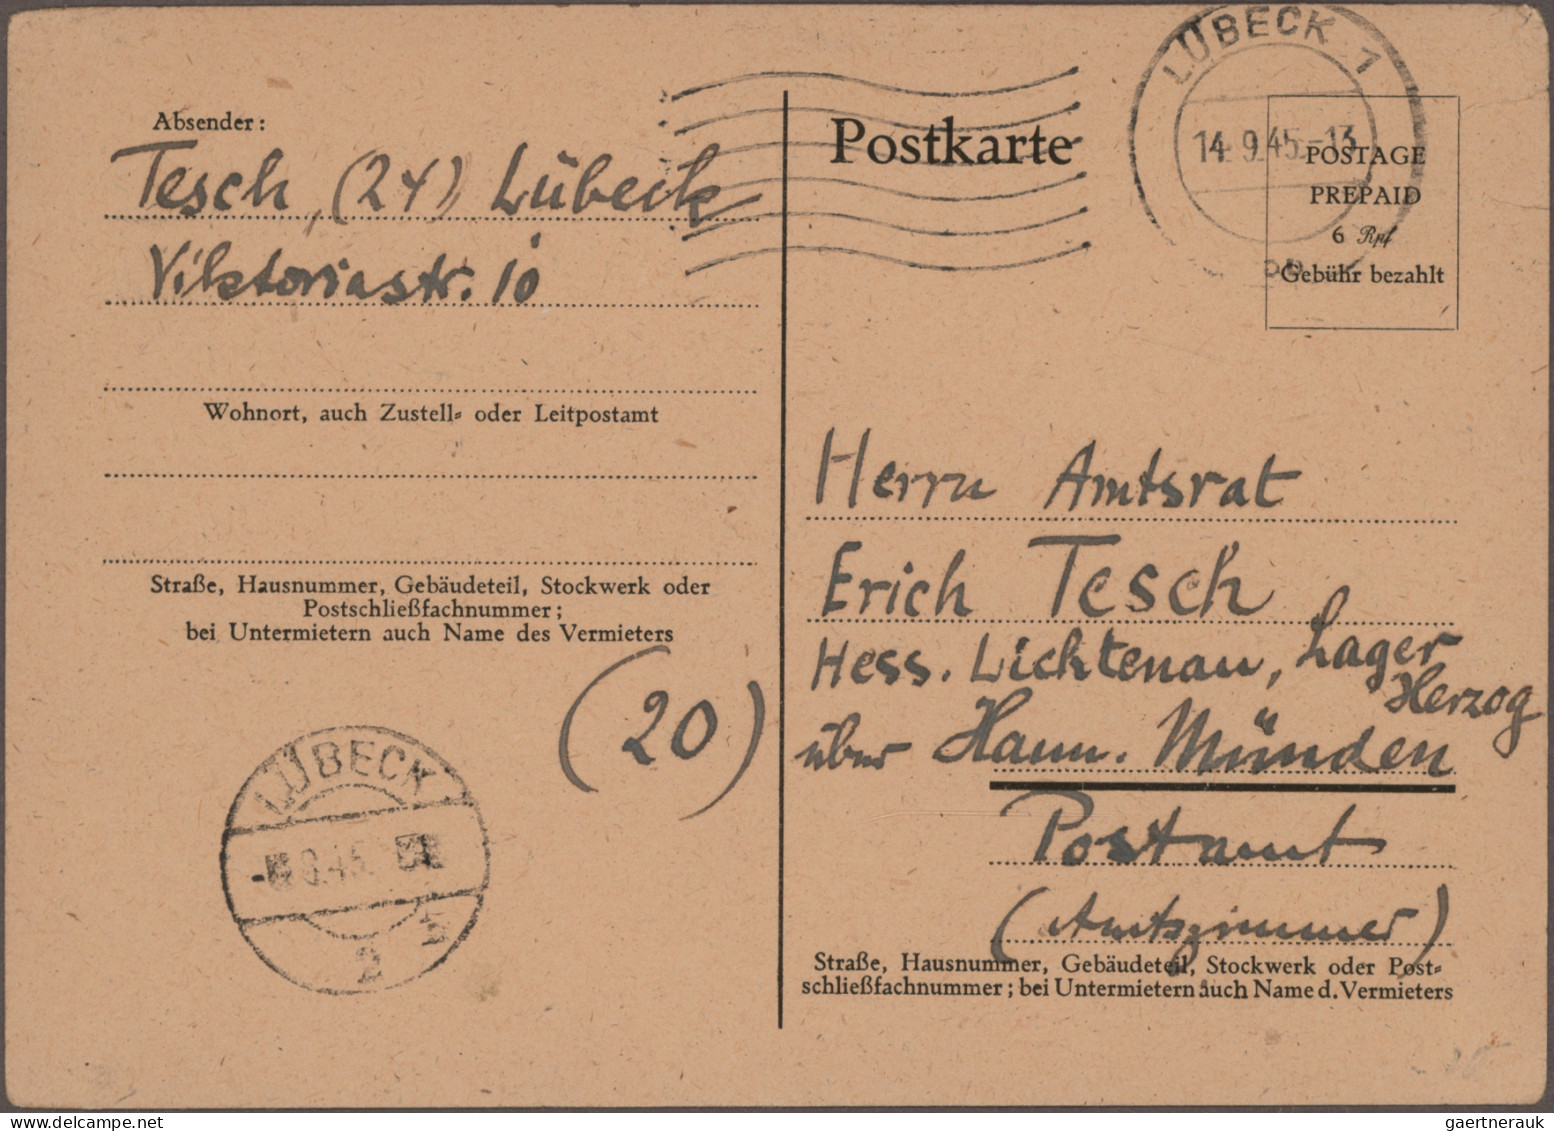 Deutschland ab 1945 - Gebühr Bezahlt: 1945, substanzstarke Spezialkollektion 'De